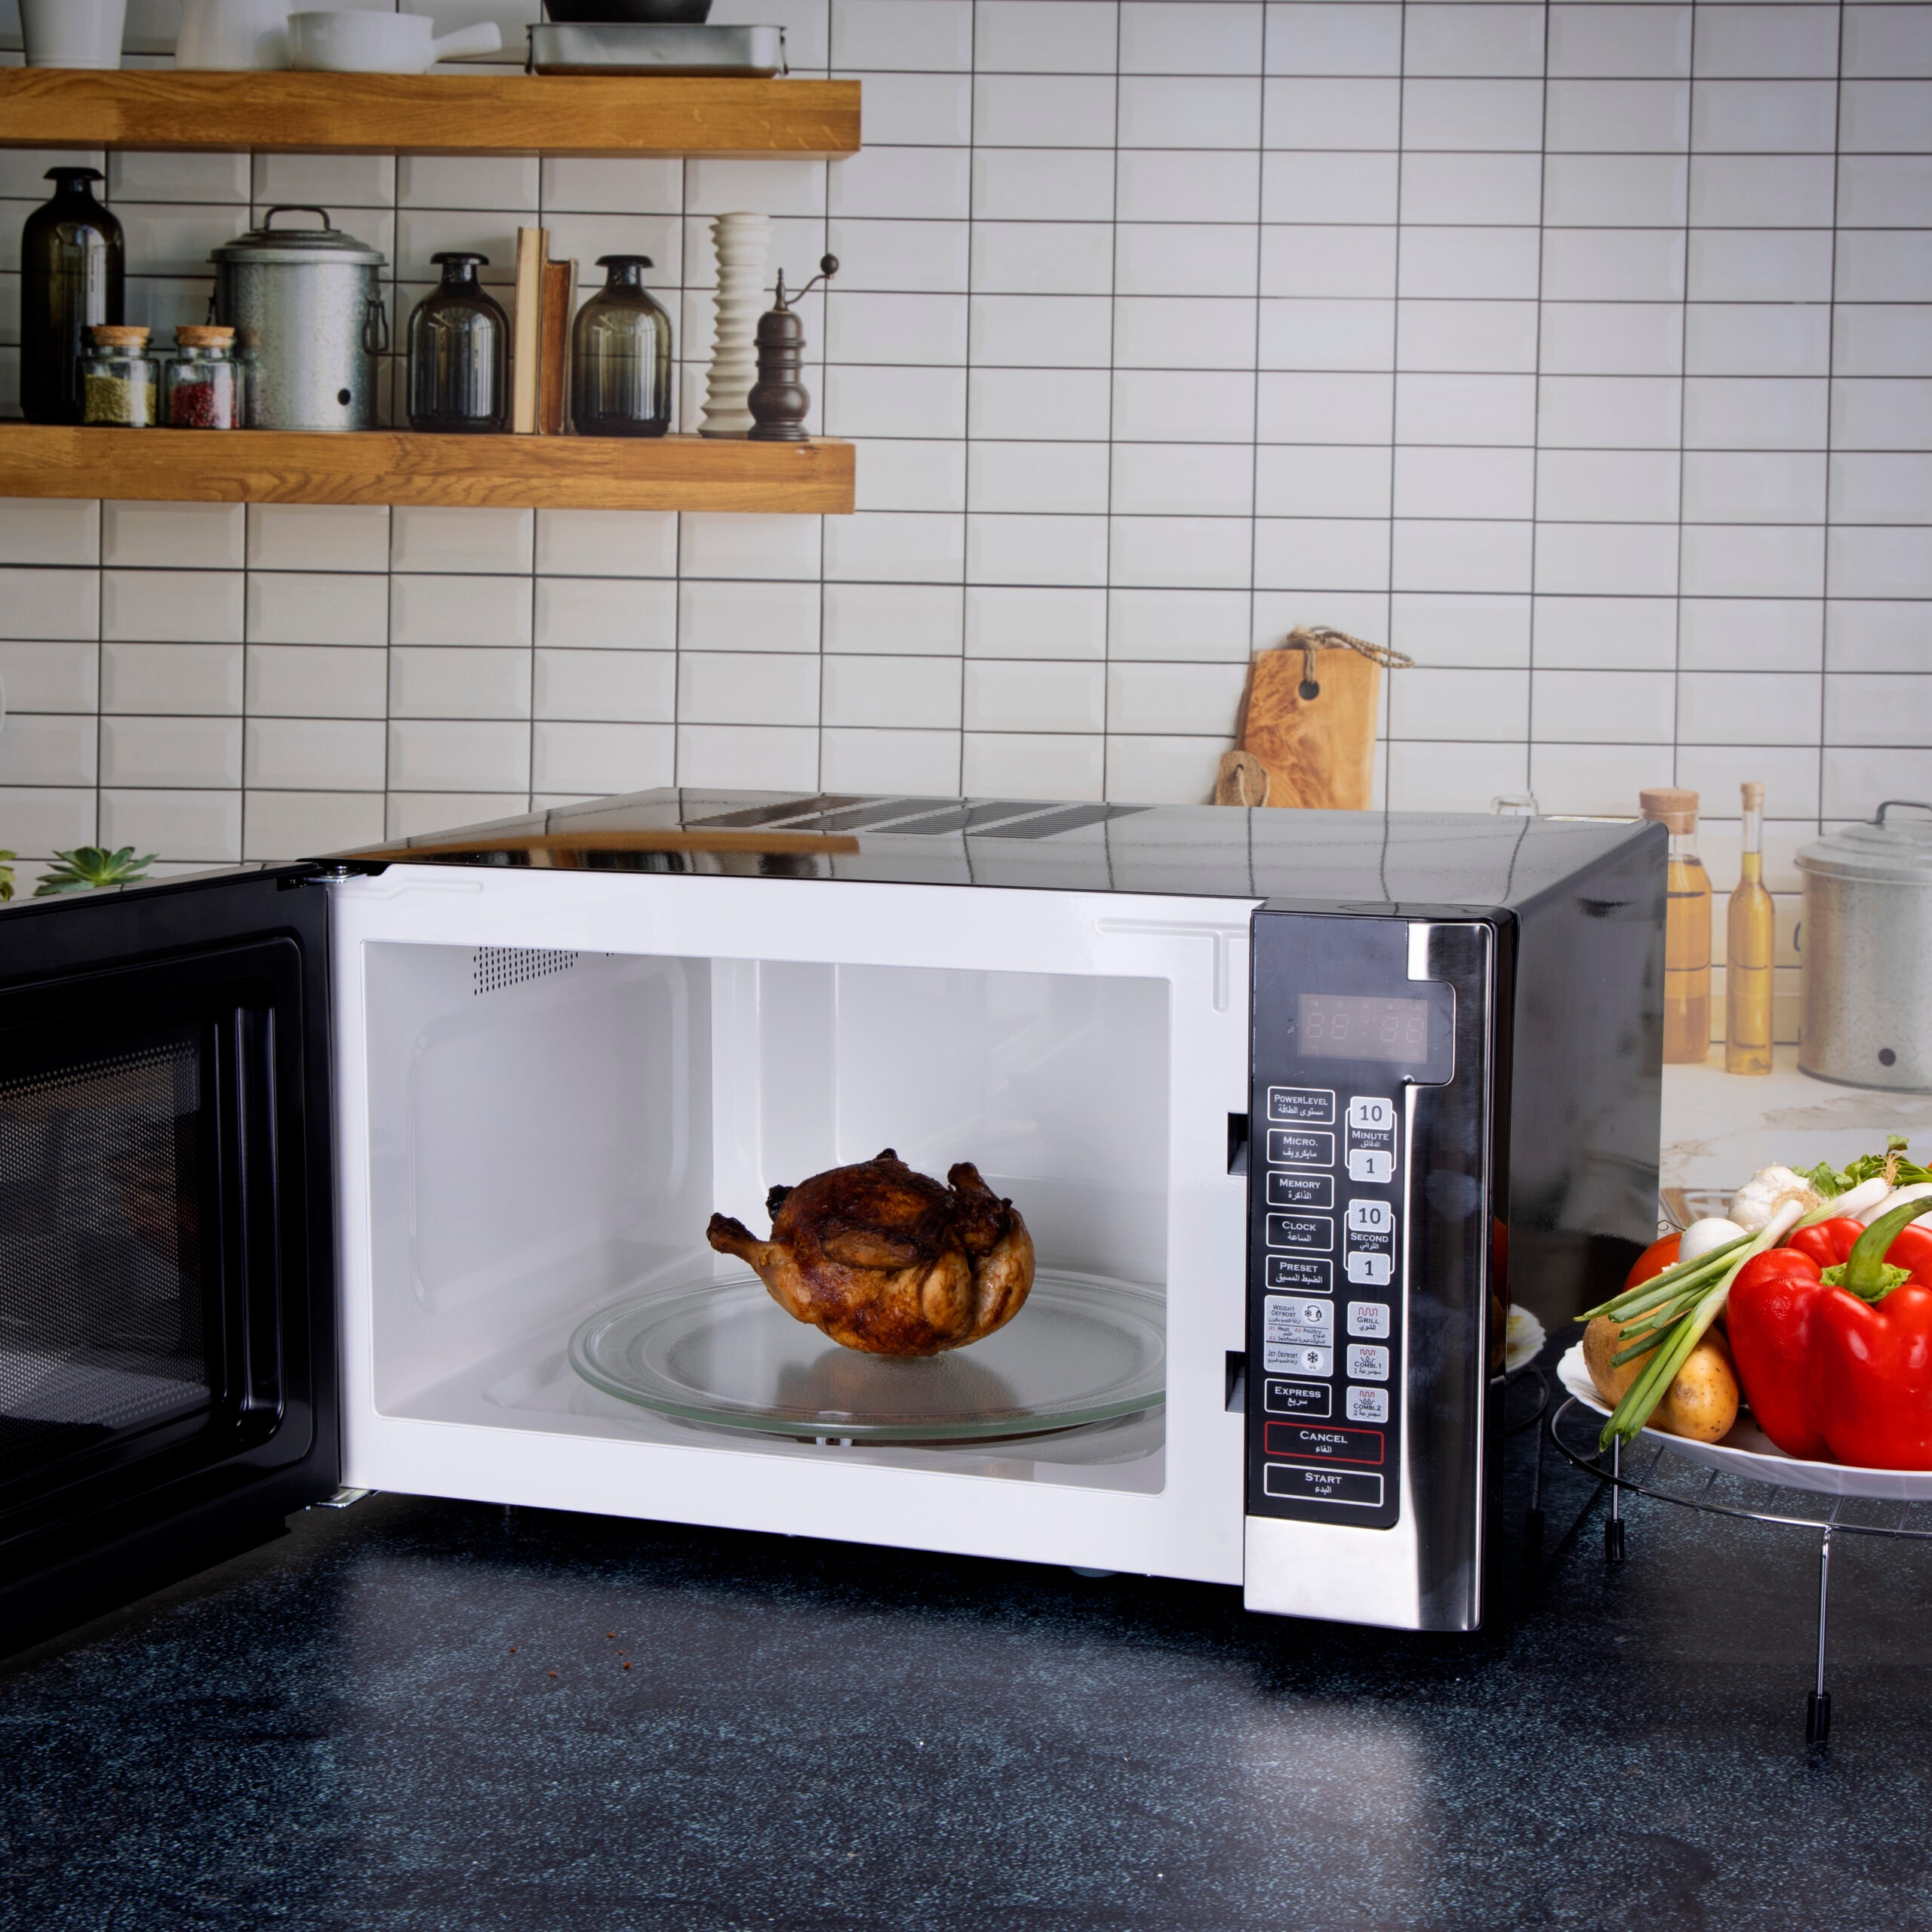 ميكرويف 45 لتر جيباس Geepas Microwave Oven 1500W Multiple Cooking Menus